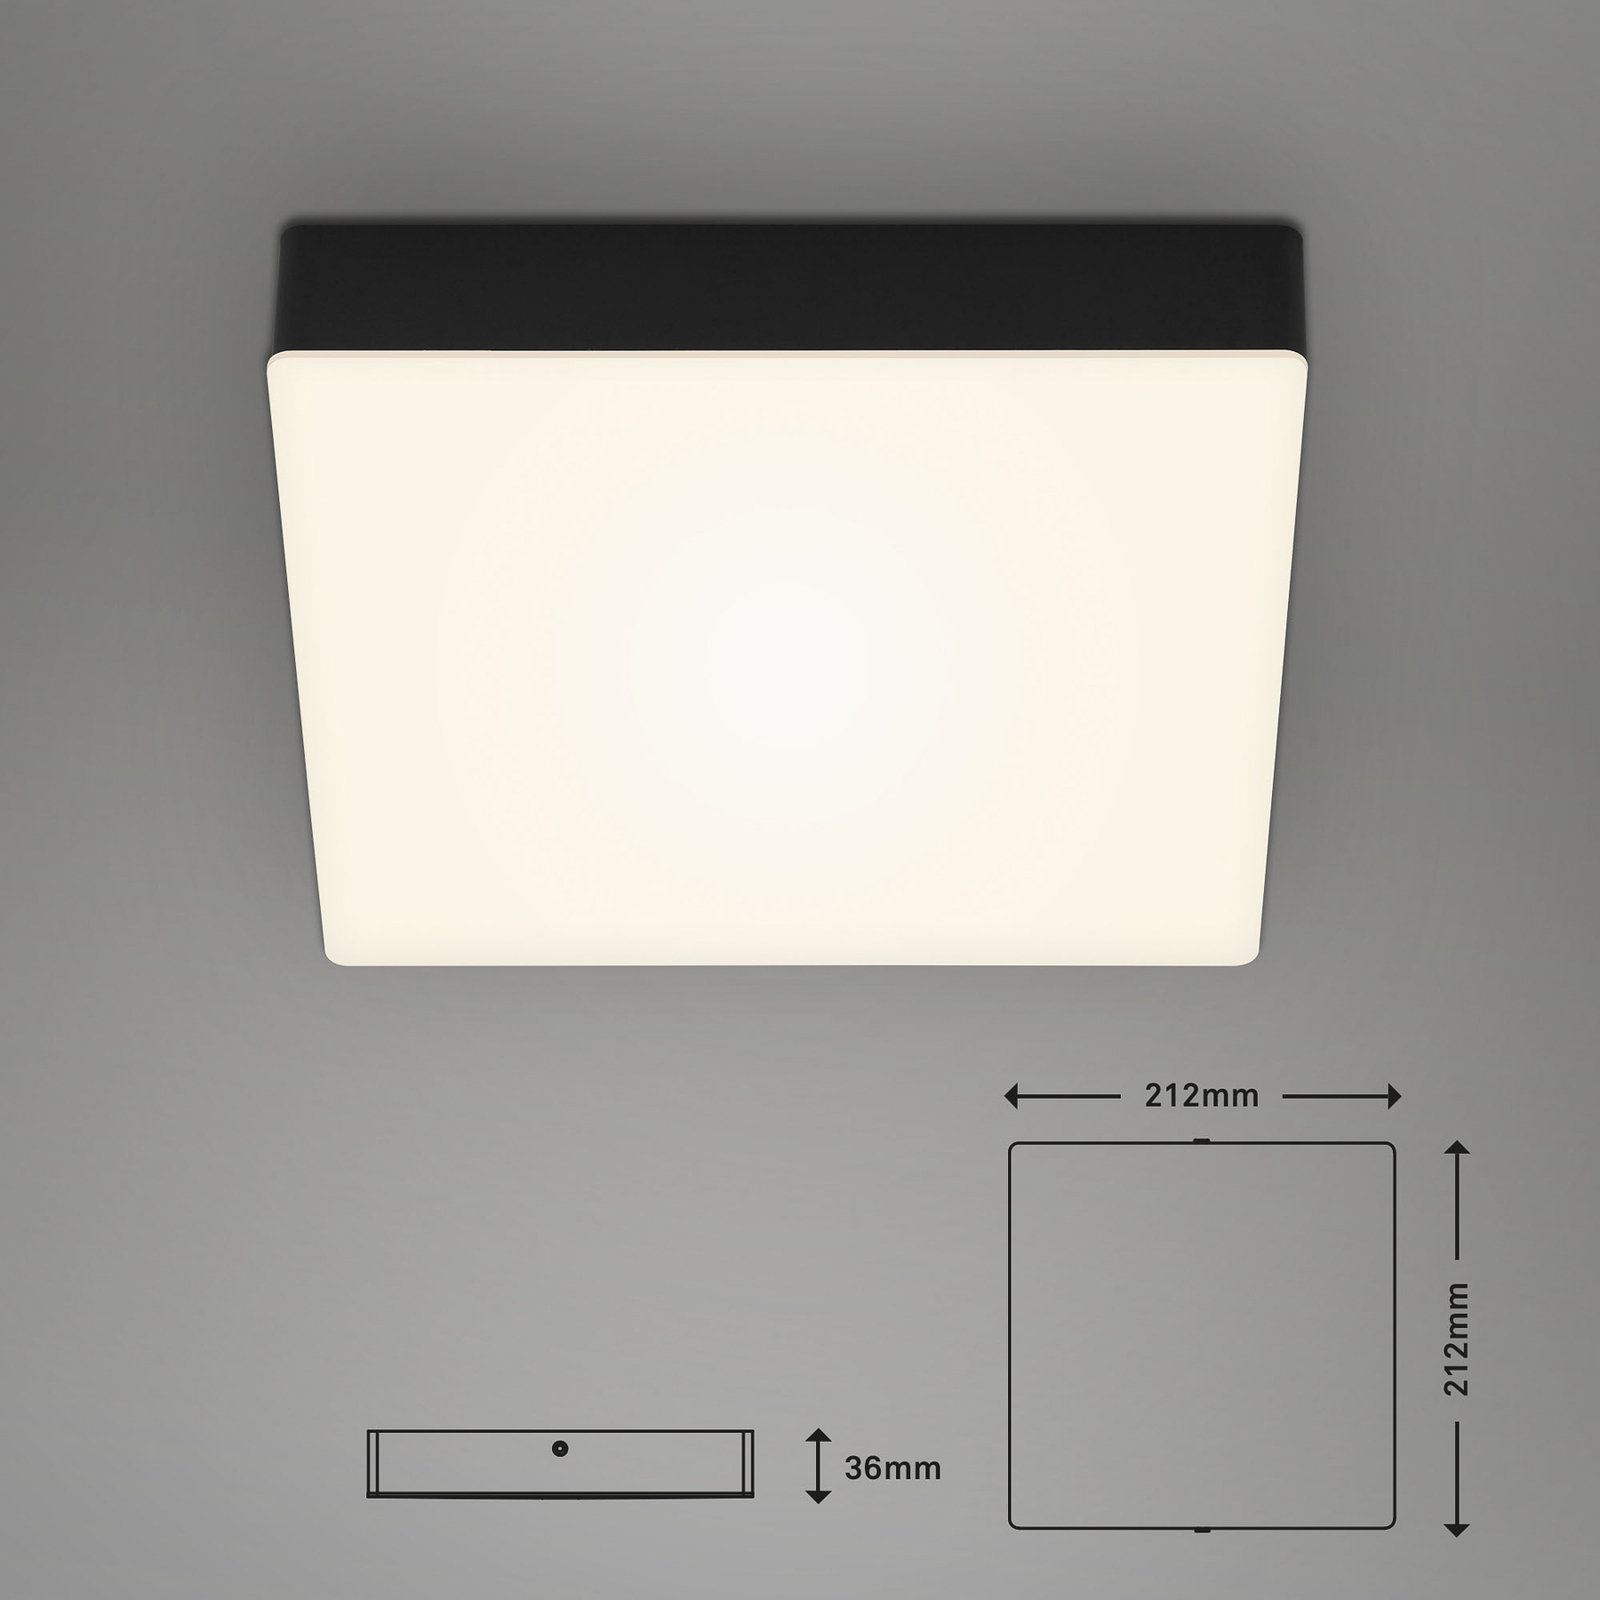 LED-Deckenleuchte Flame, 21,2 x 21,2 cm, schwarz